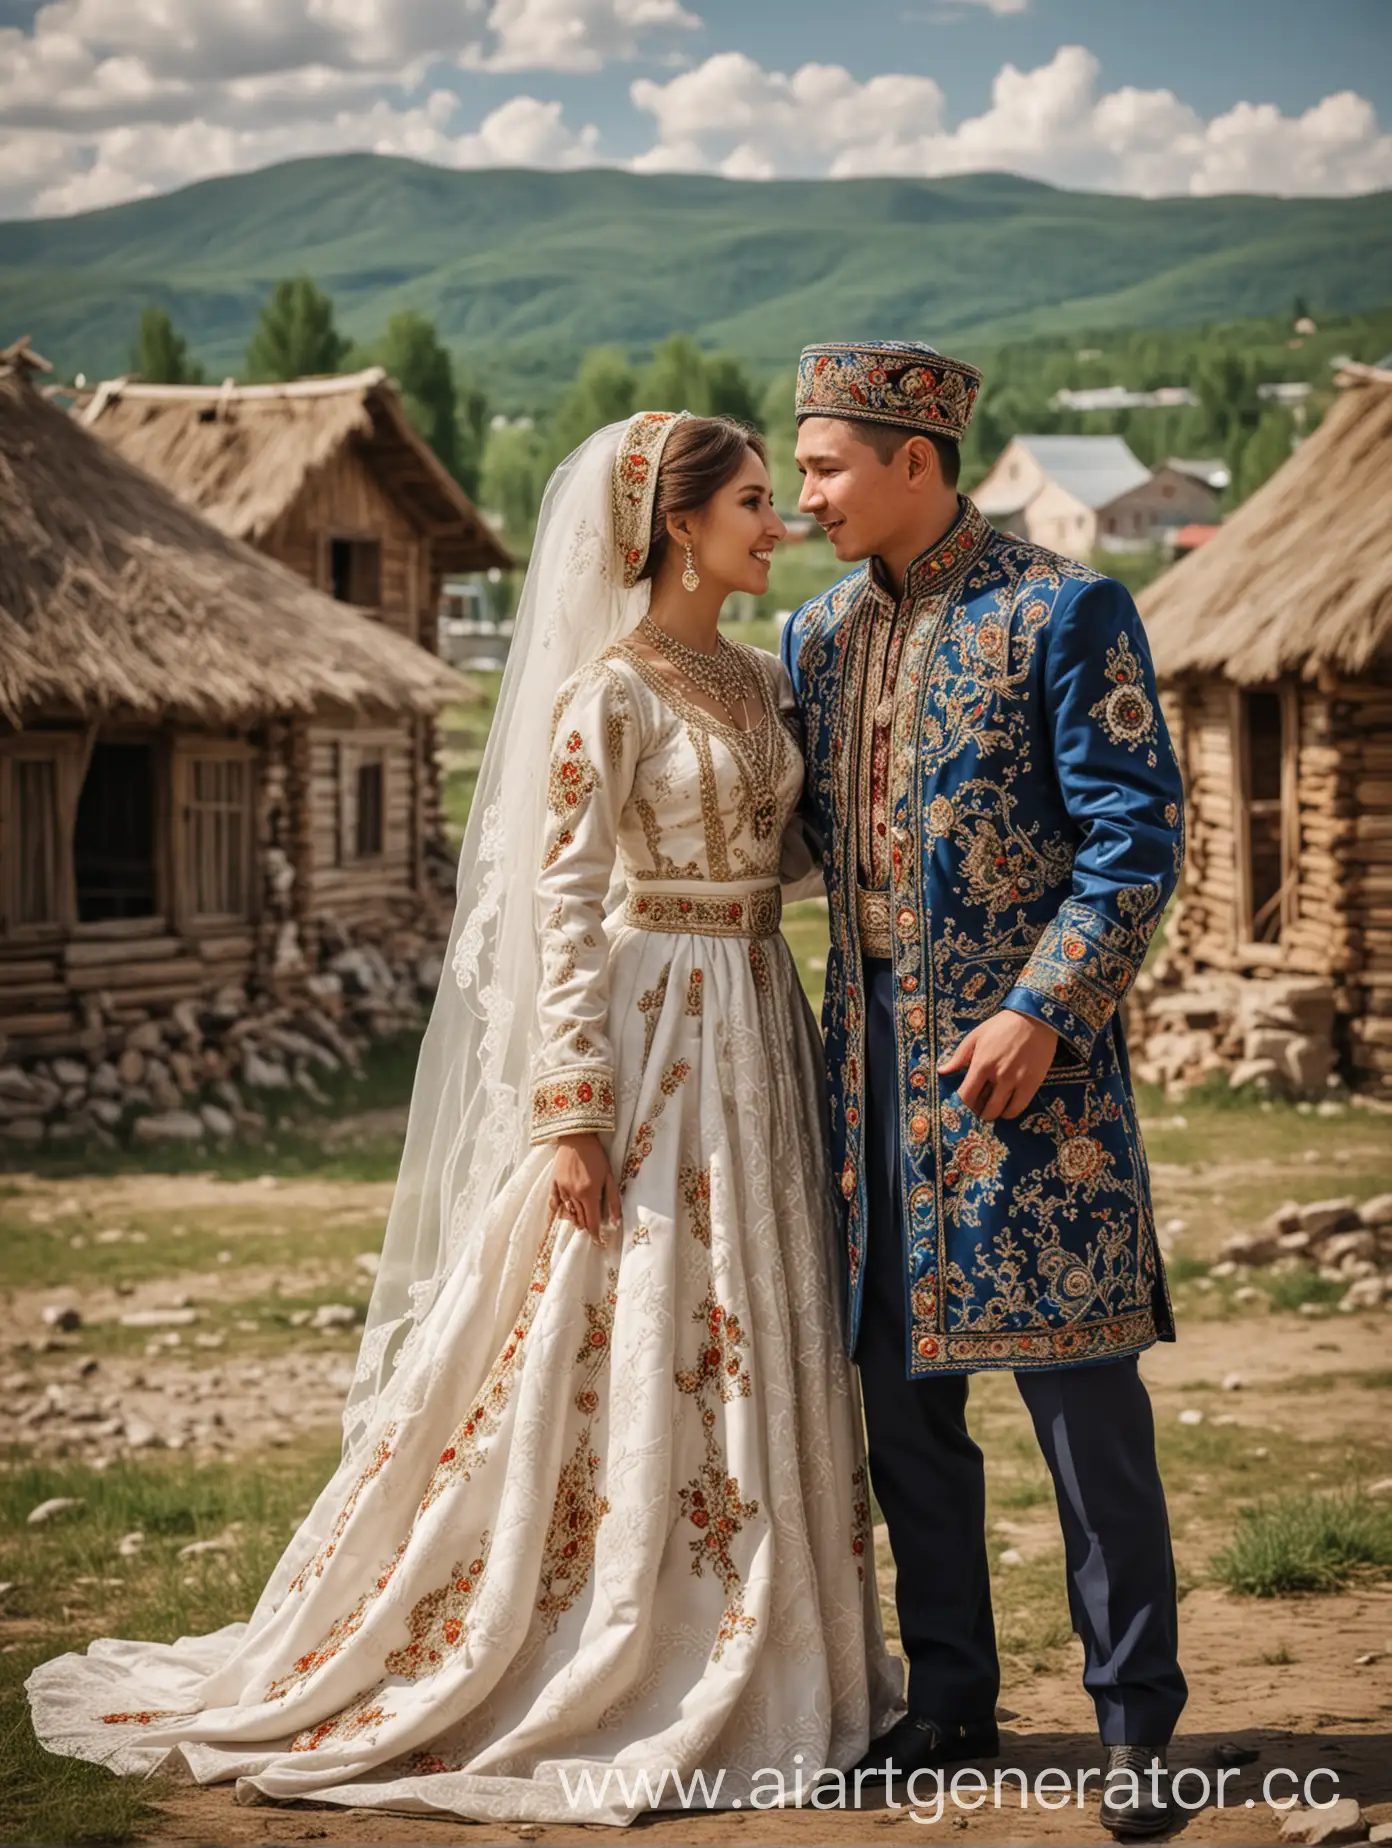 Традиционная башкирская свадьба, на изображении жених и невеста на фоне деревни 